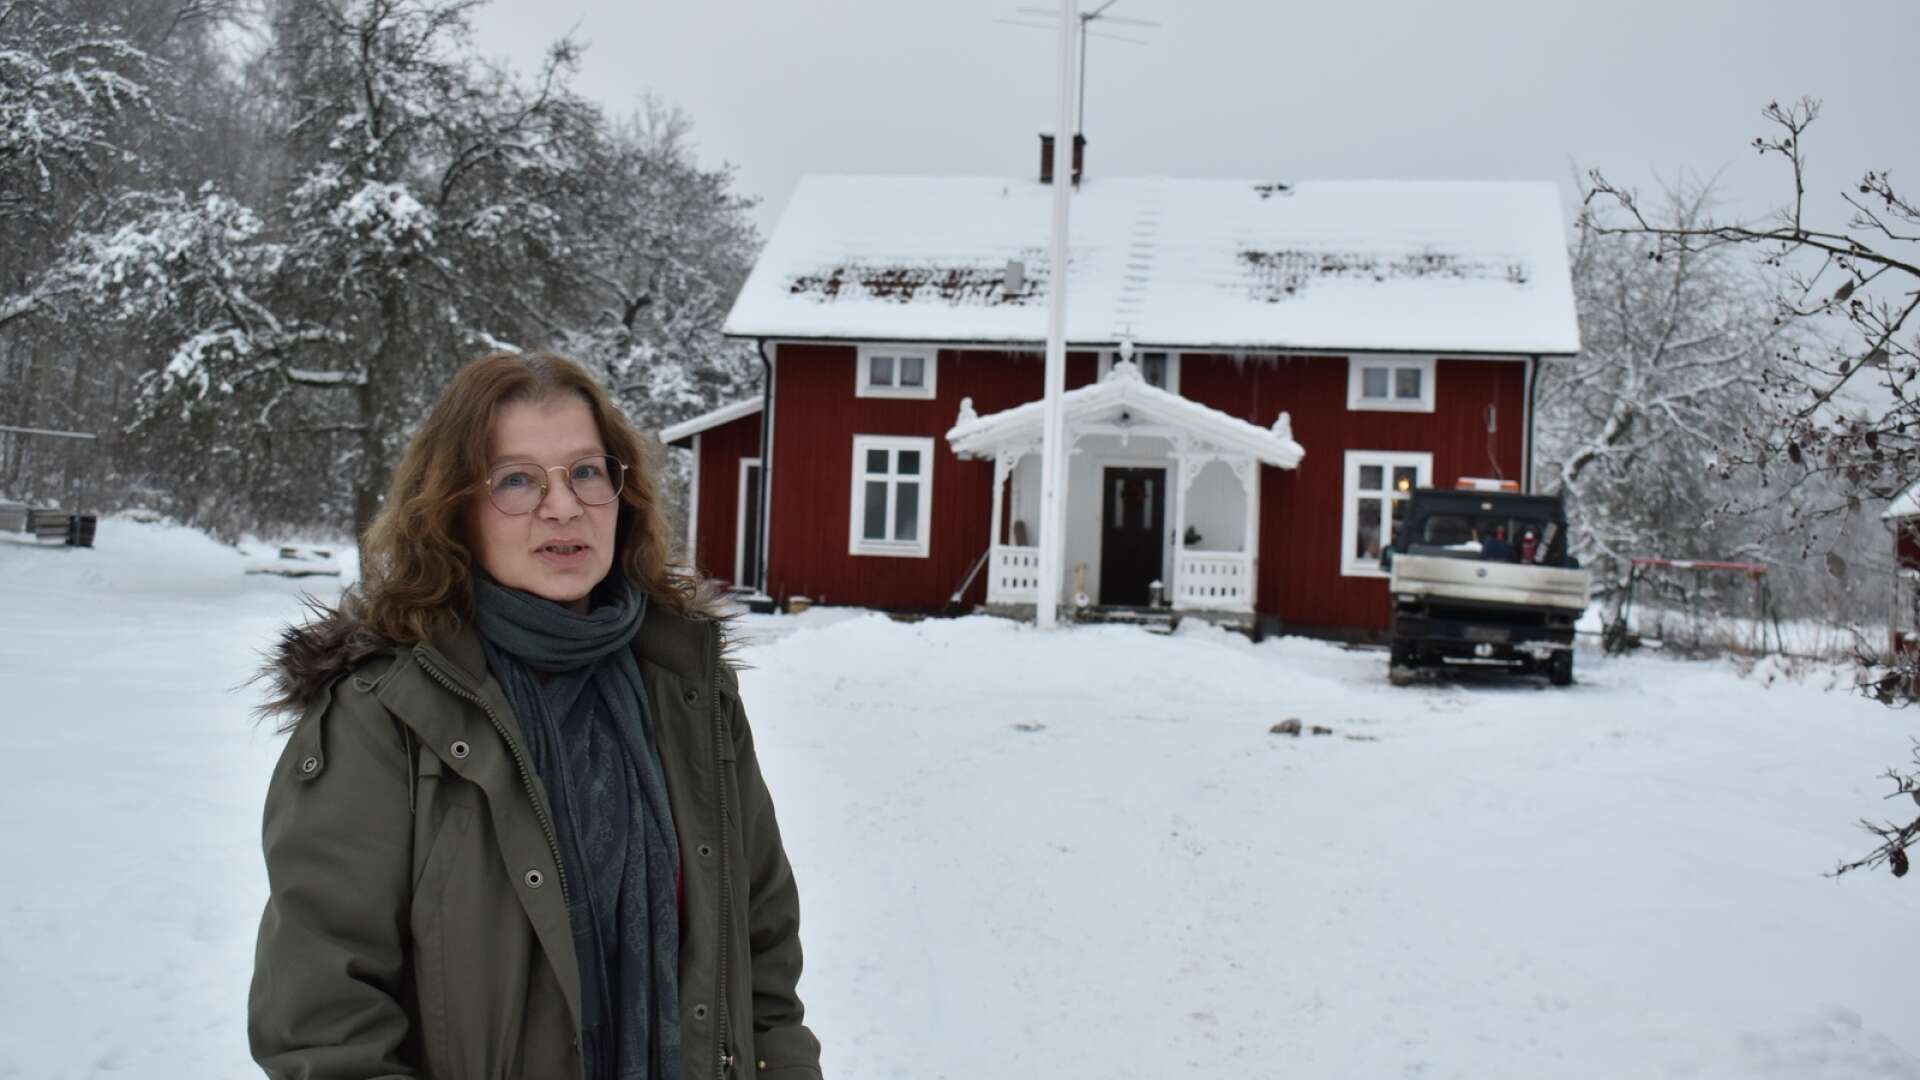 I idyllen på Hökensås i Tidaholms kommun bor Anna Marin som nu gett ut sin första barnbok, Tina och trollen. En vinst i Postkodlotteriet möjliggjorde utgivningen.